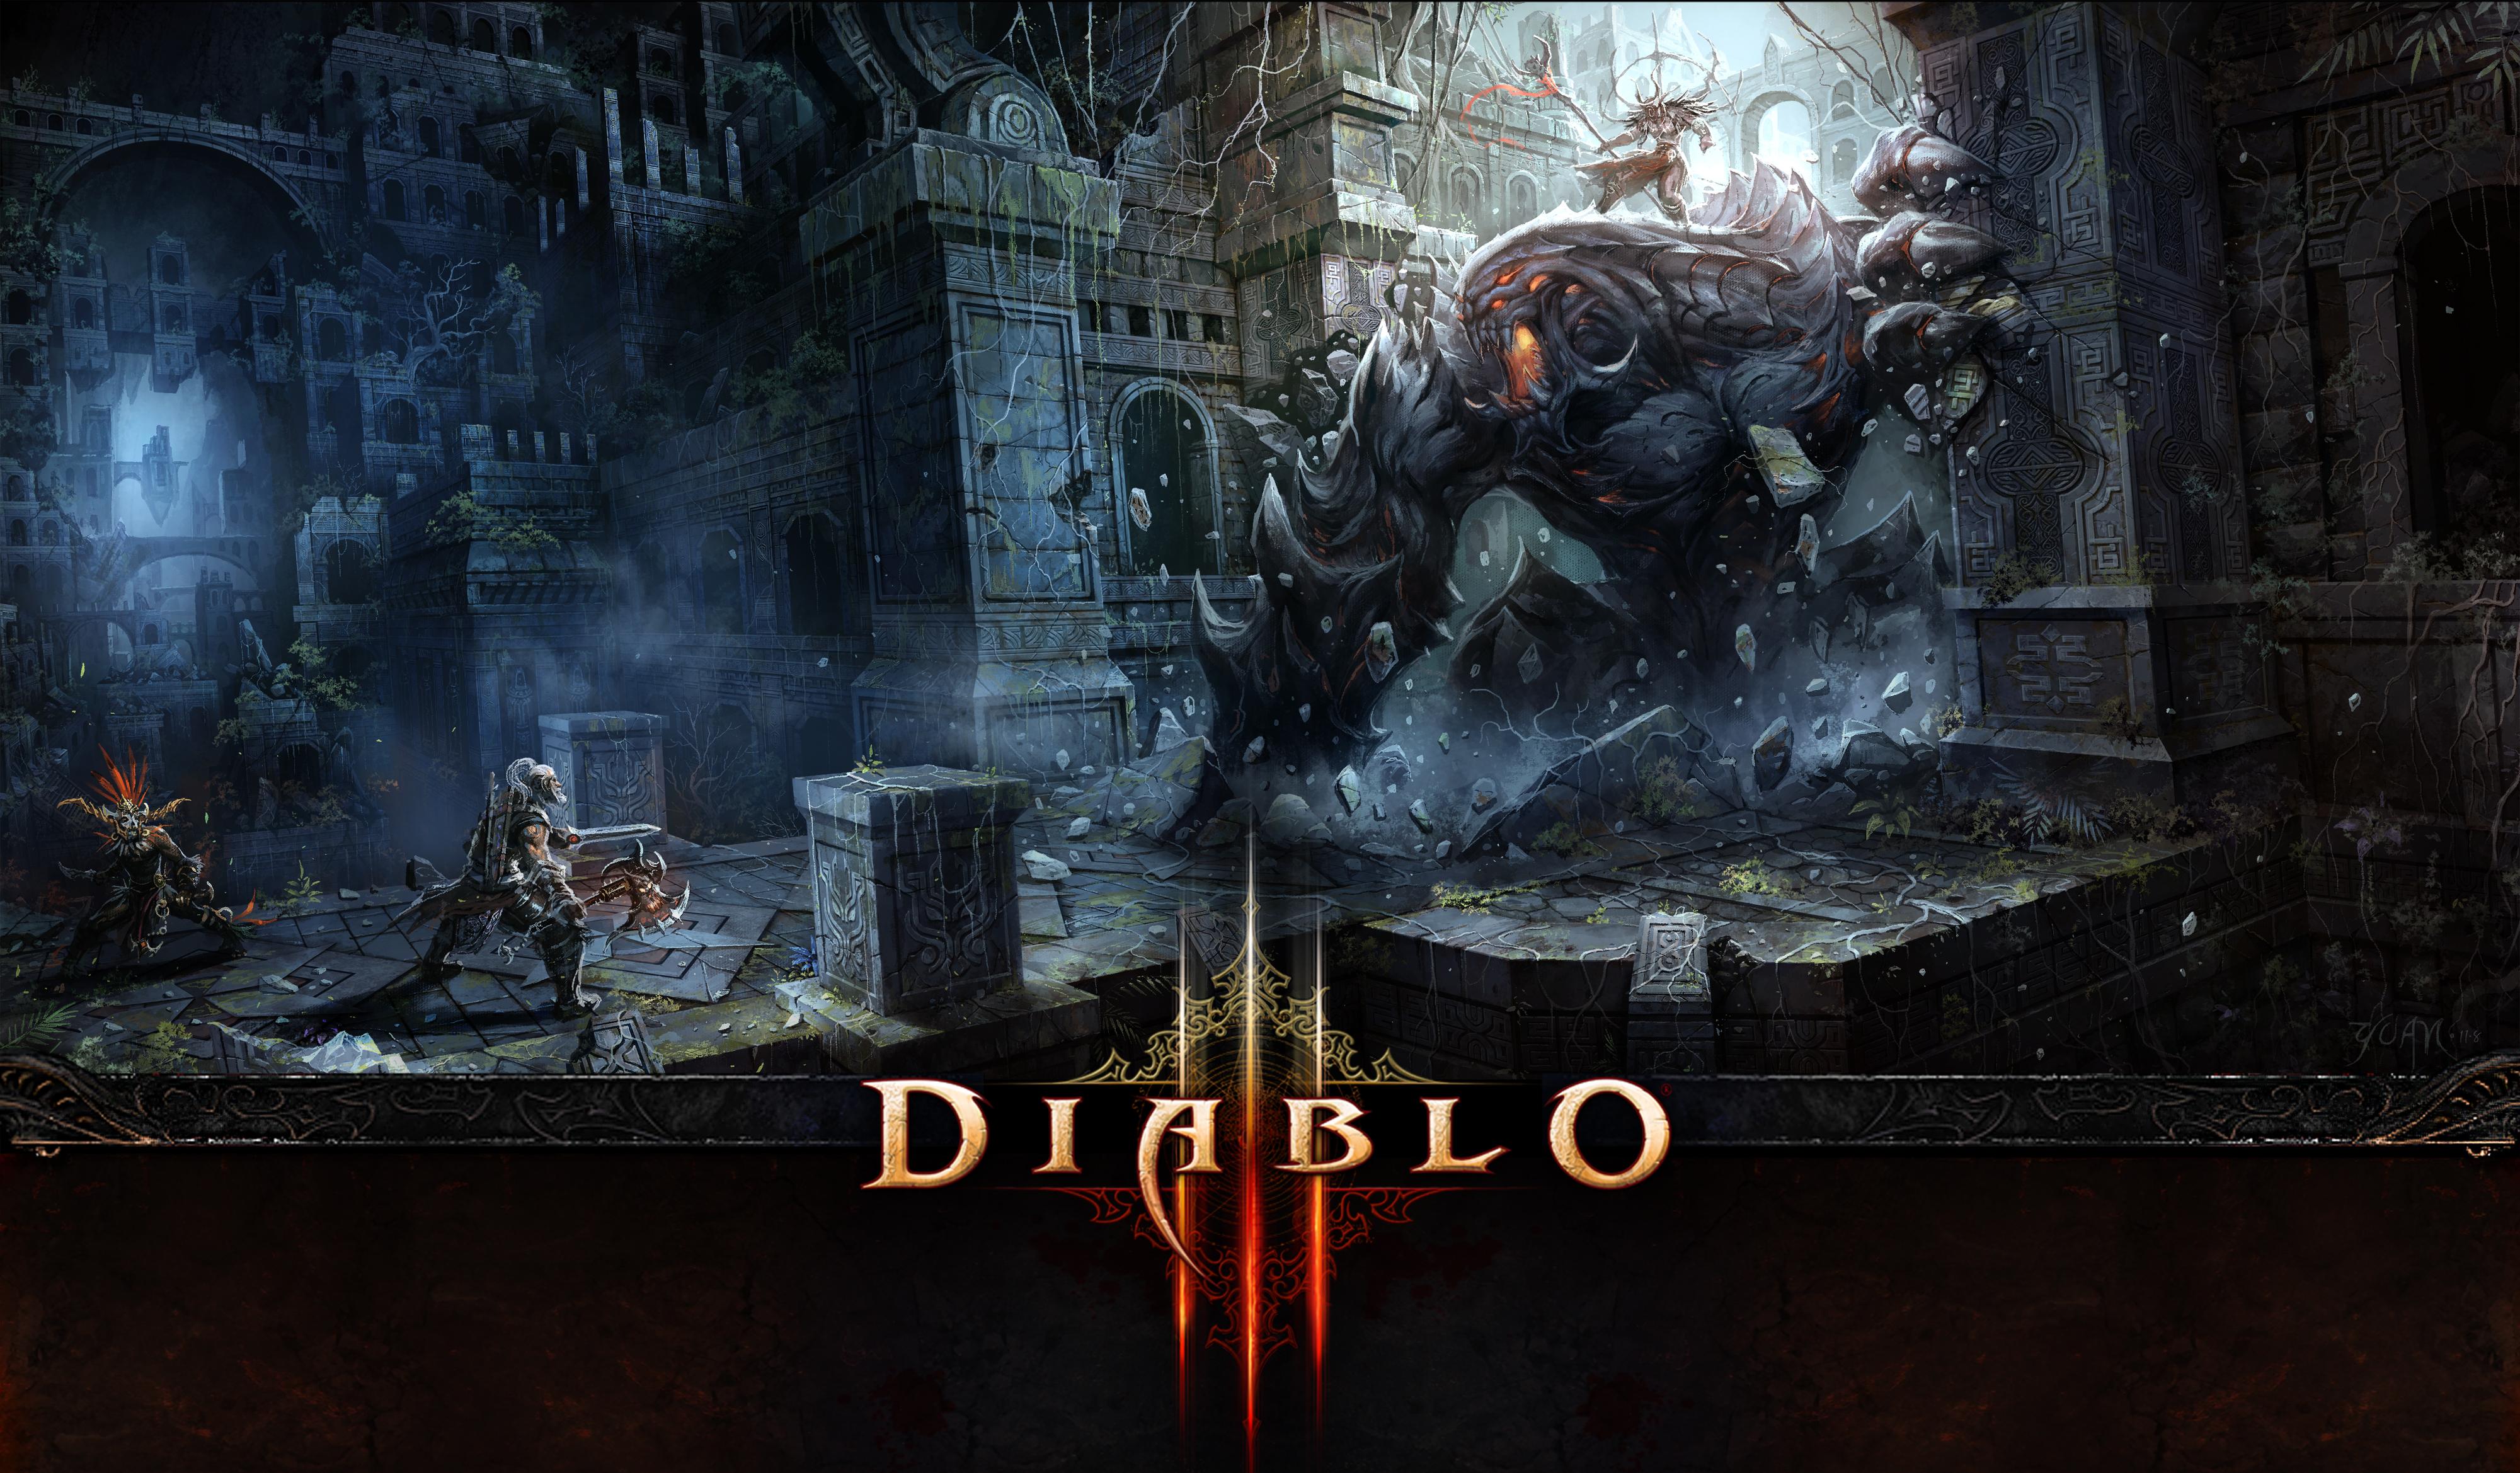 Video Game Diablo Iii 4k Ultra HD Wallpaper By Chao Yuan Xu